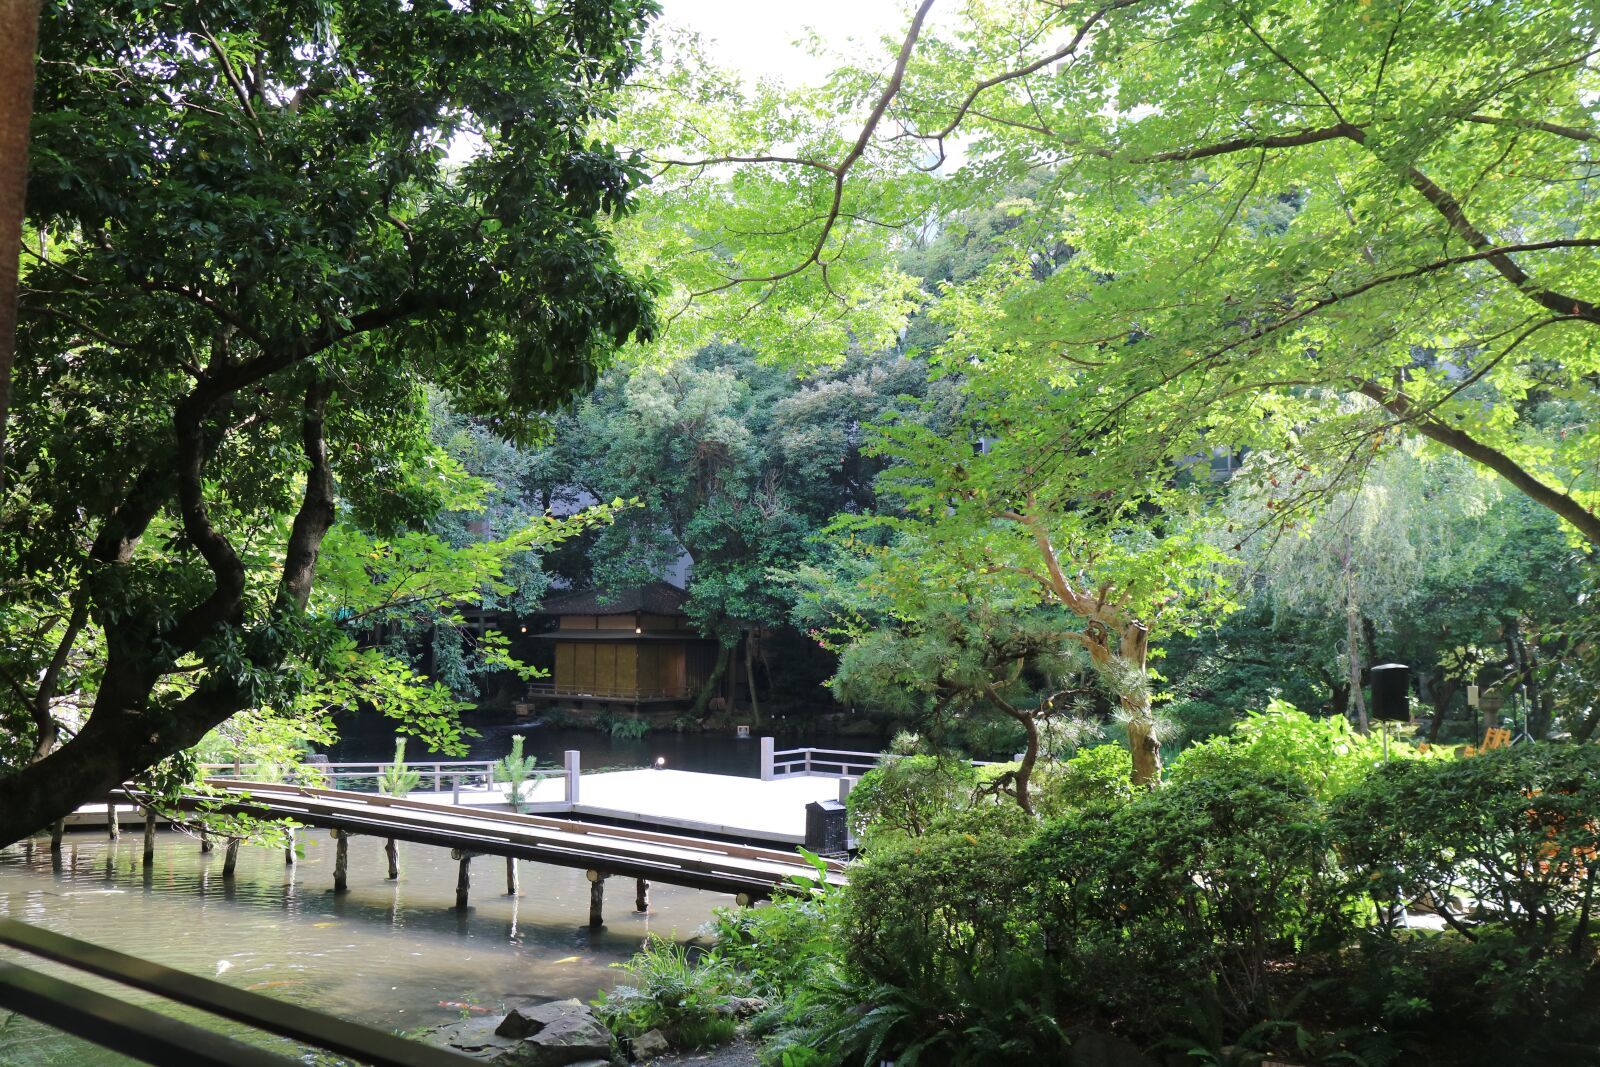 Canon EOS M3 sample photo. Japan, garden, natural photography